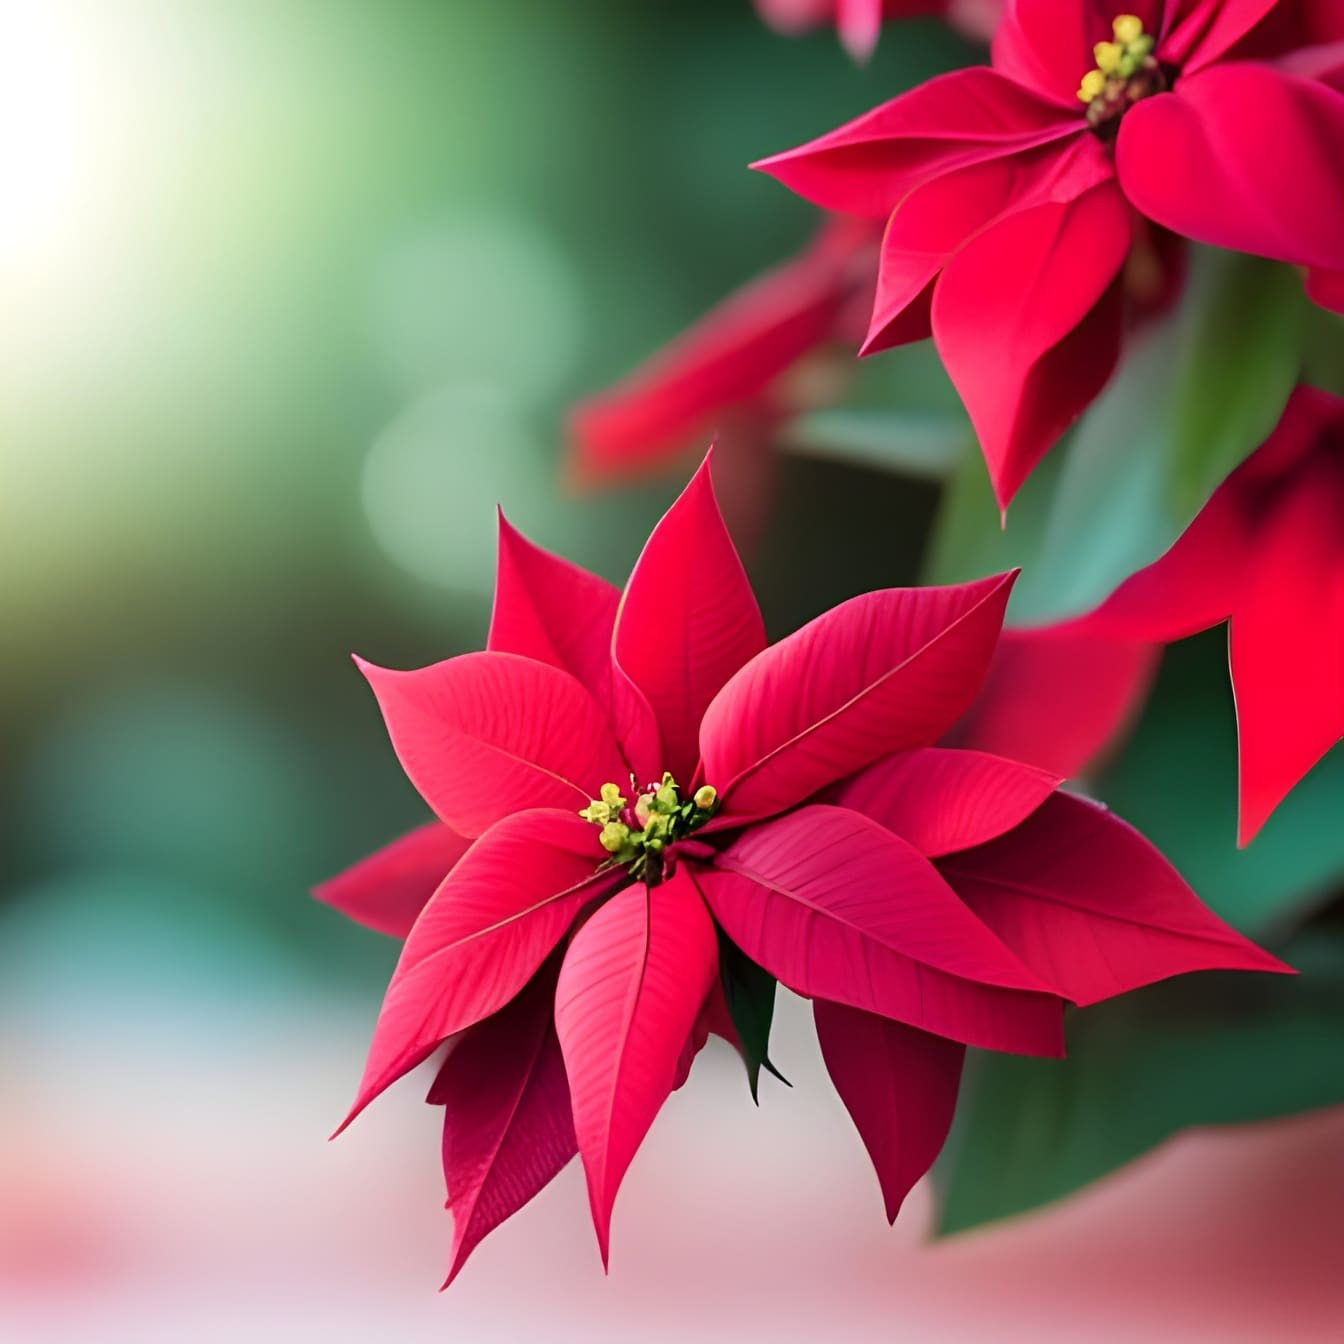 Stelle di Natale (Euphorbia pulcherrima) petali rosso scuro – arte dell’intelligenza artificiale